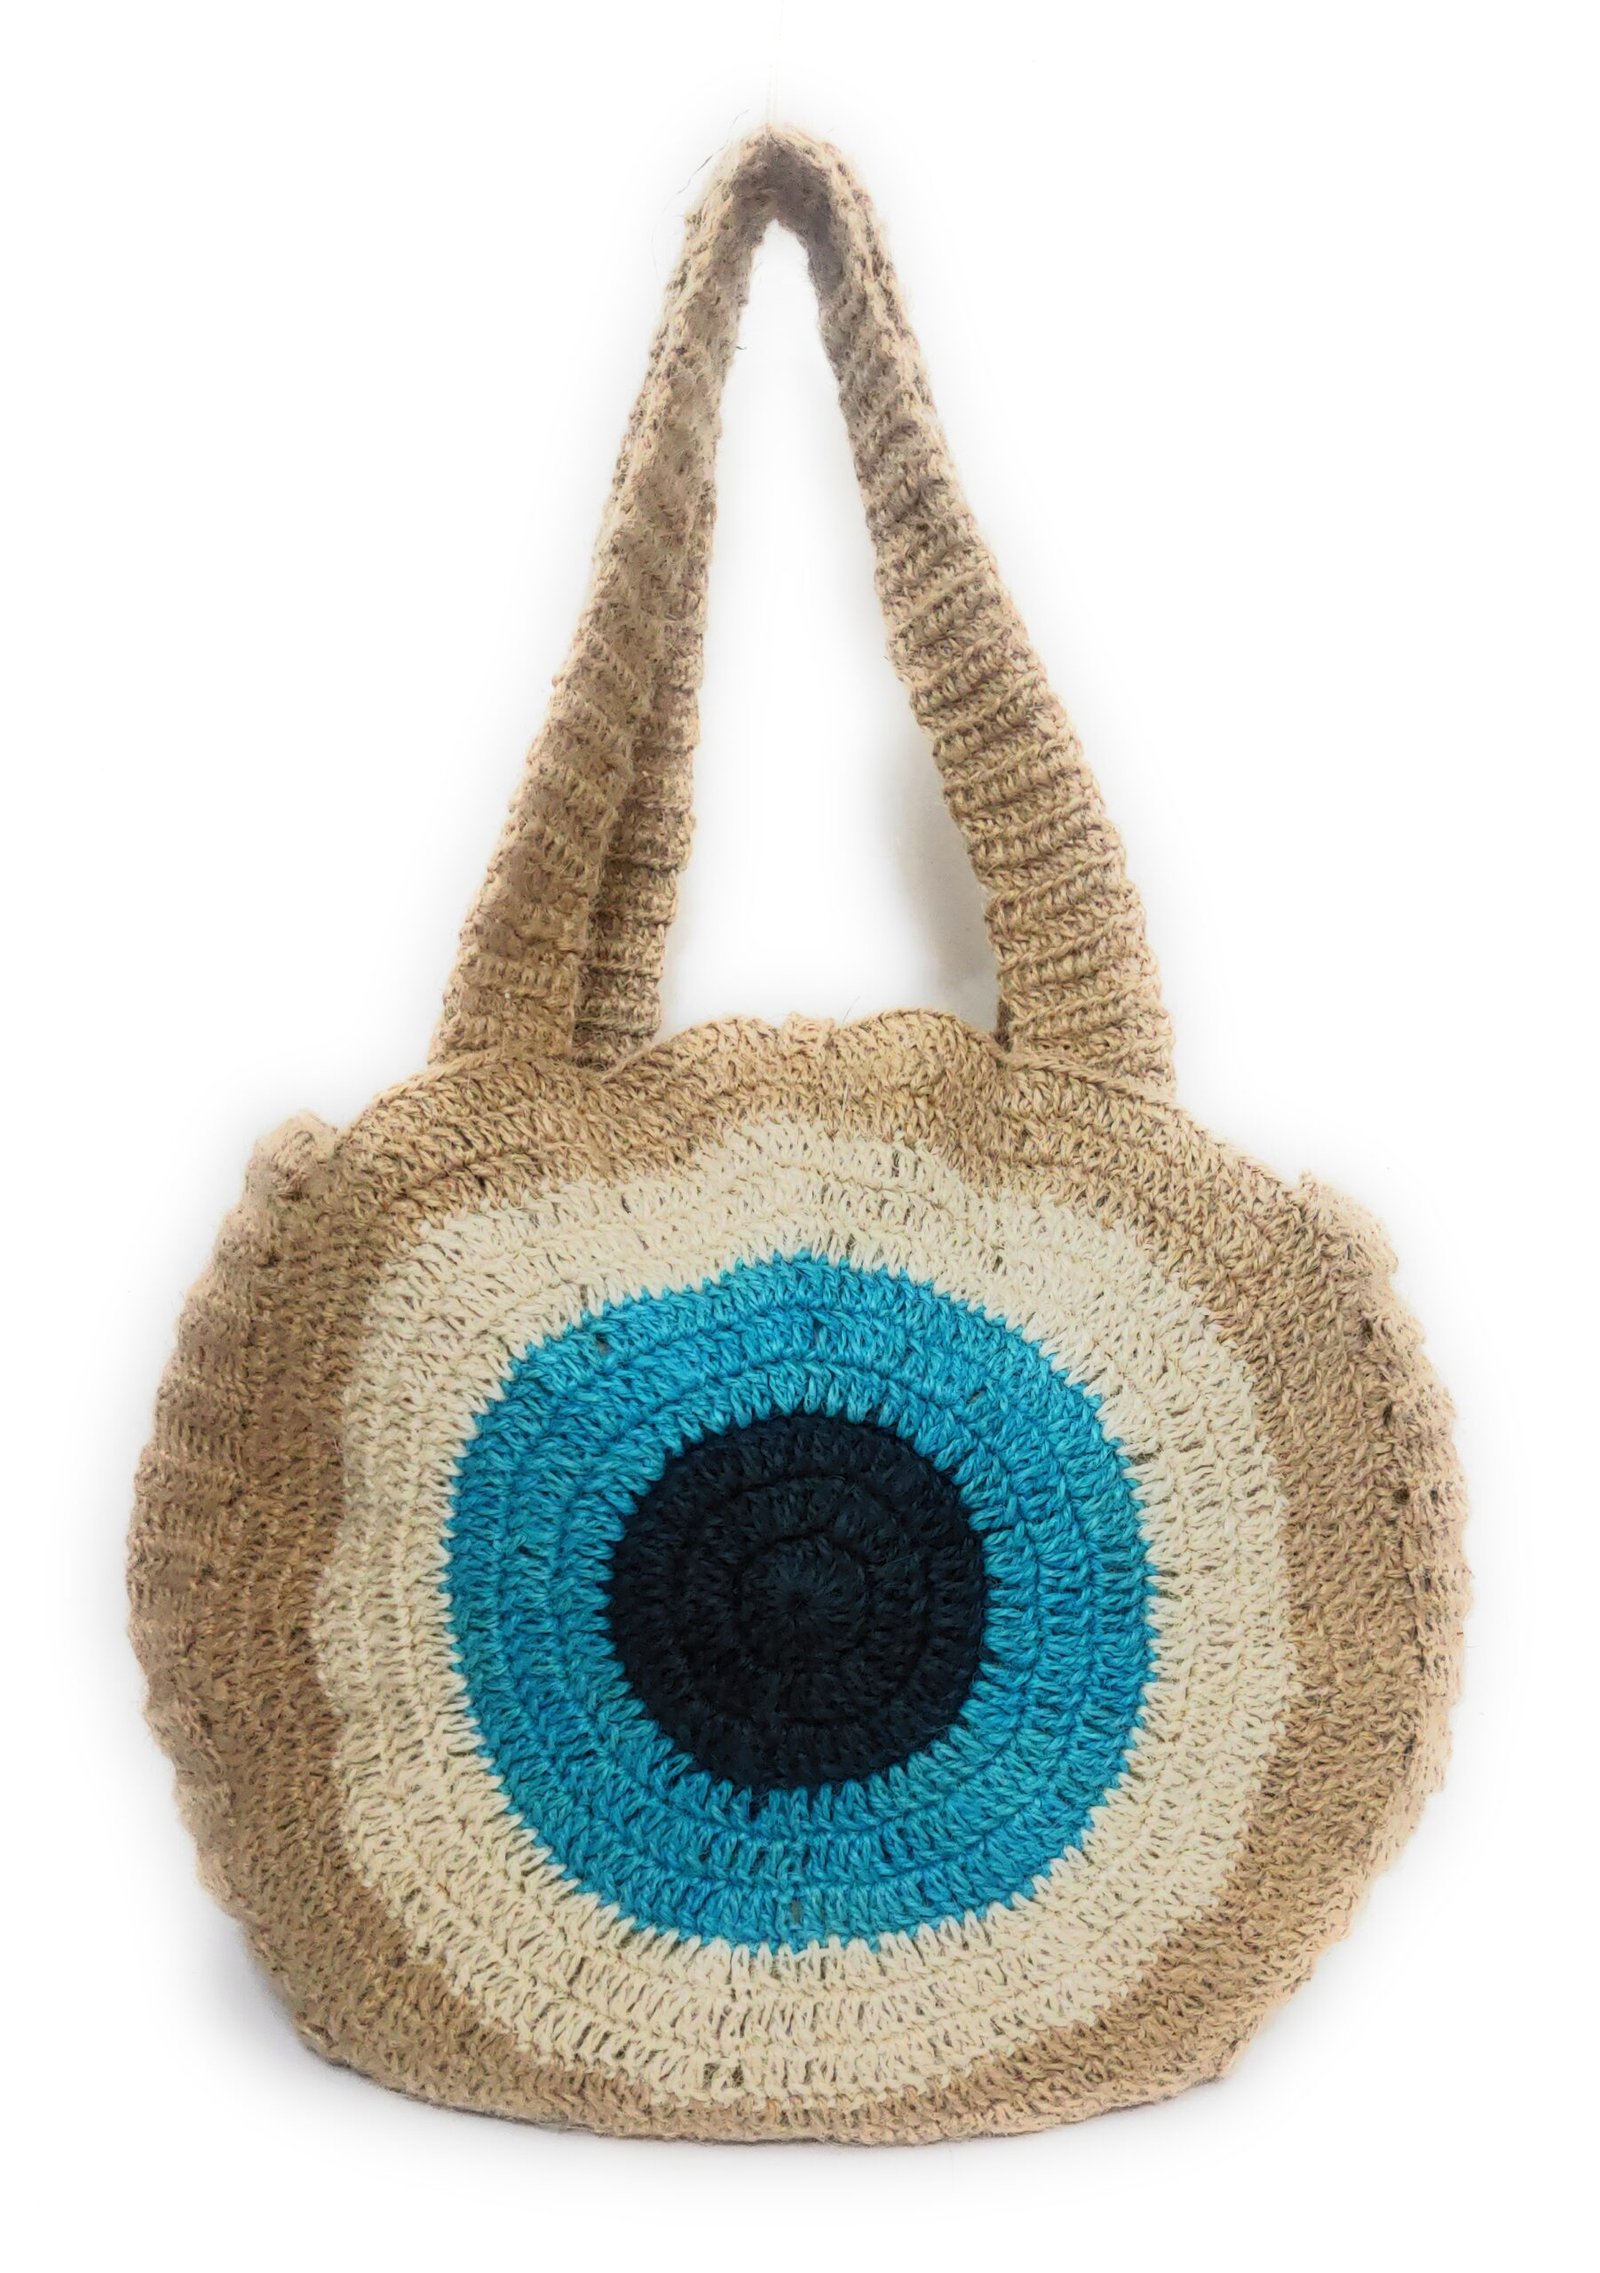 Instagram Crochet Bag